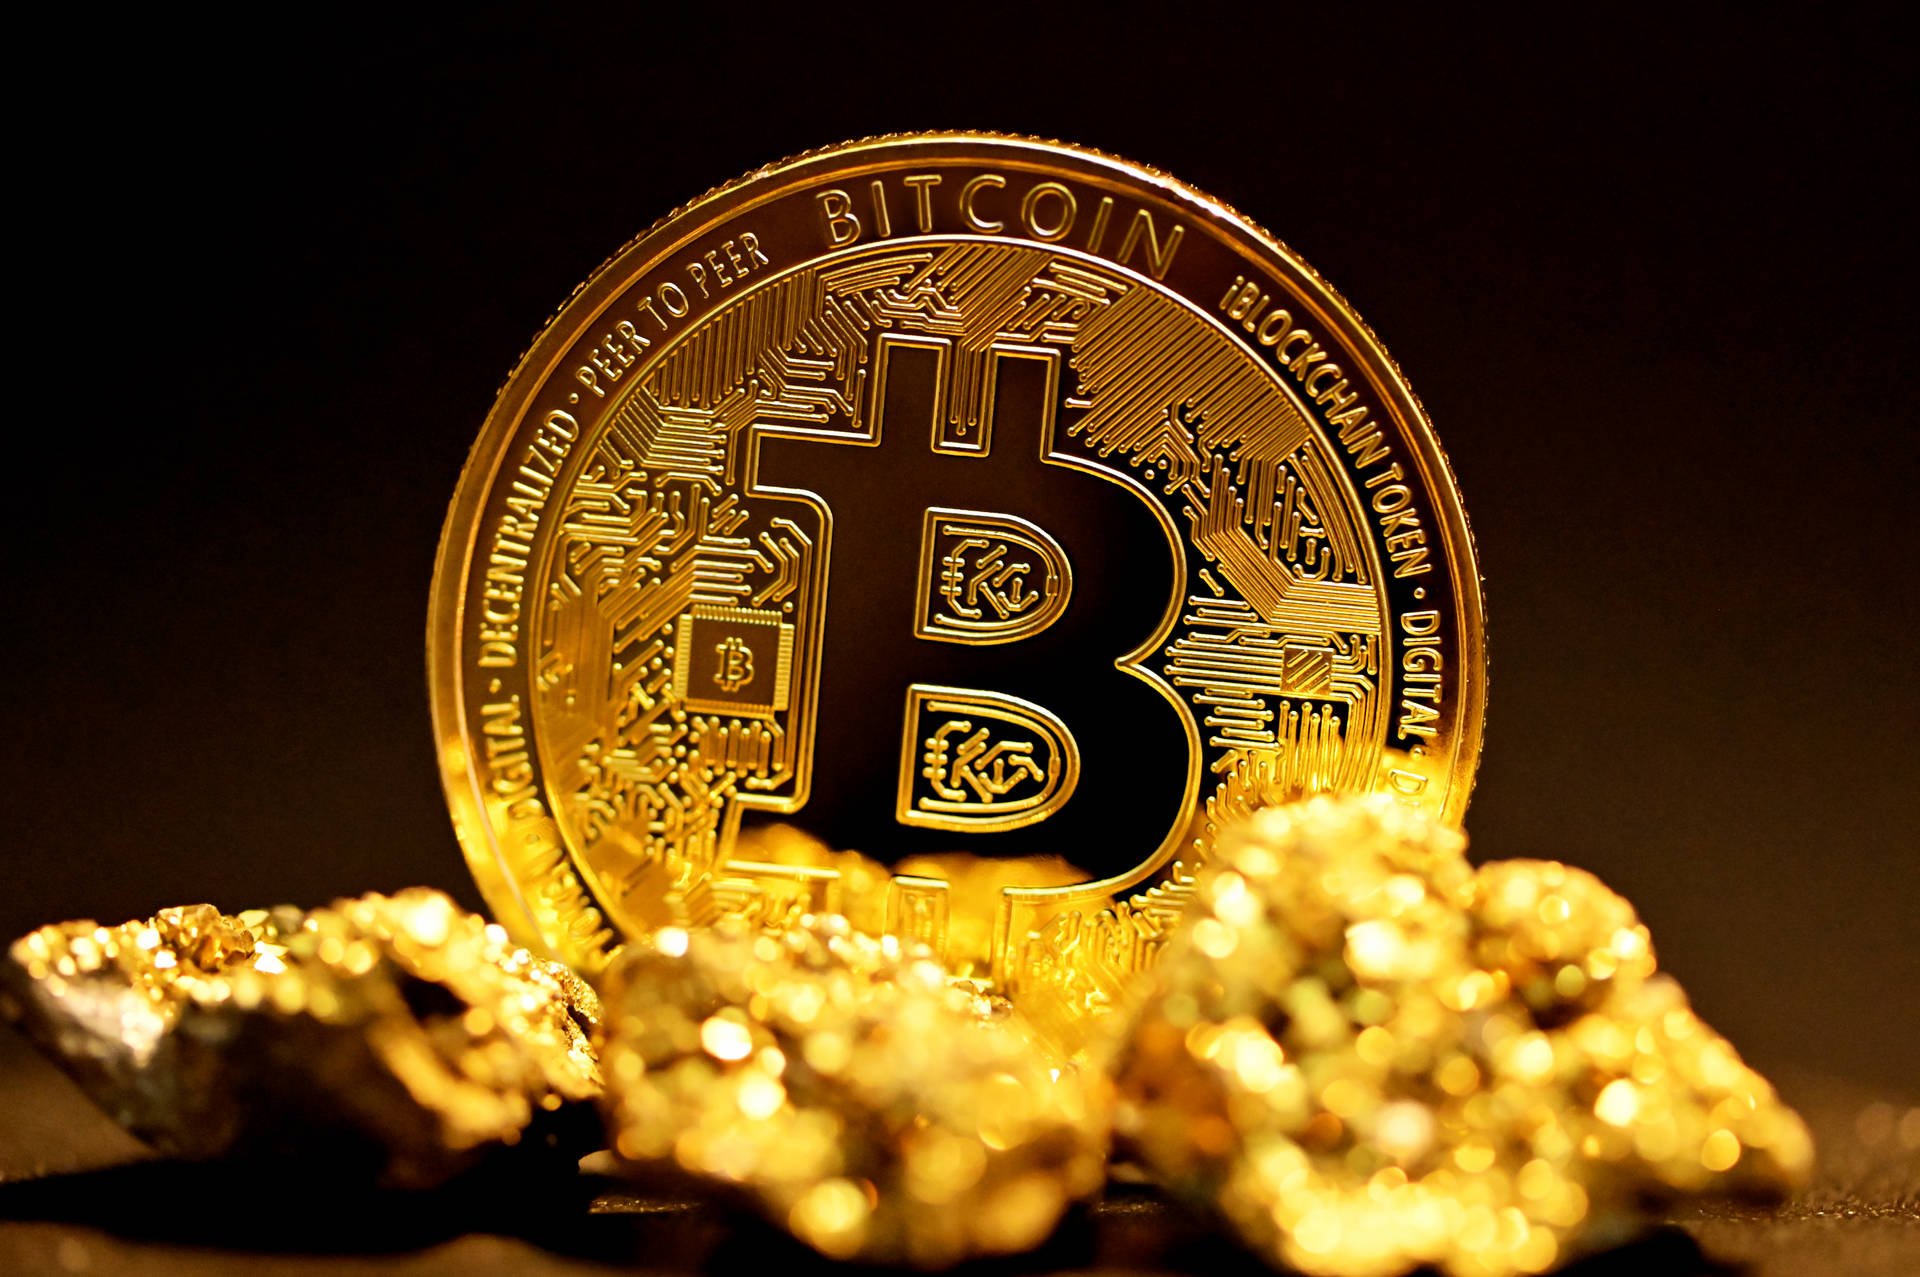 Brilliant Gold Bitcoin Background